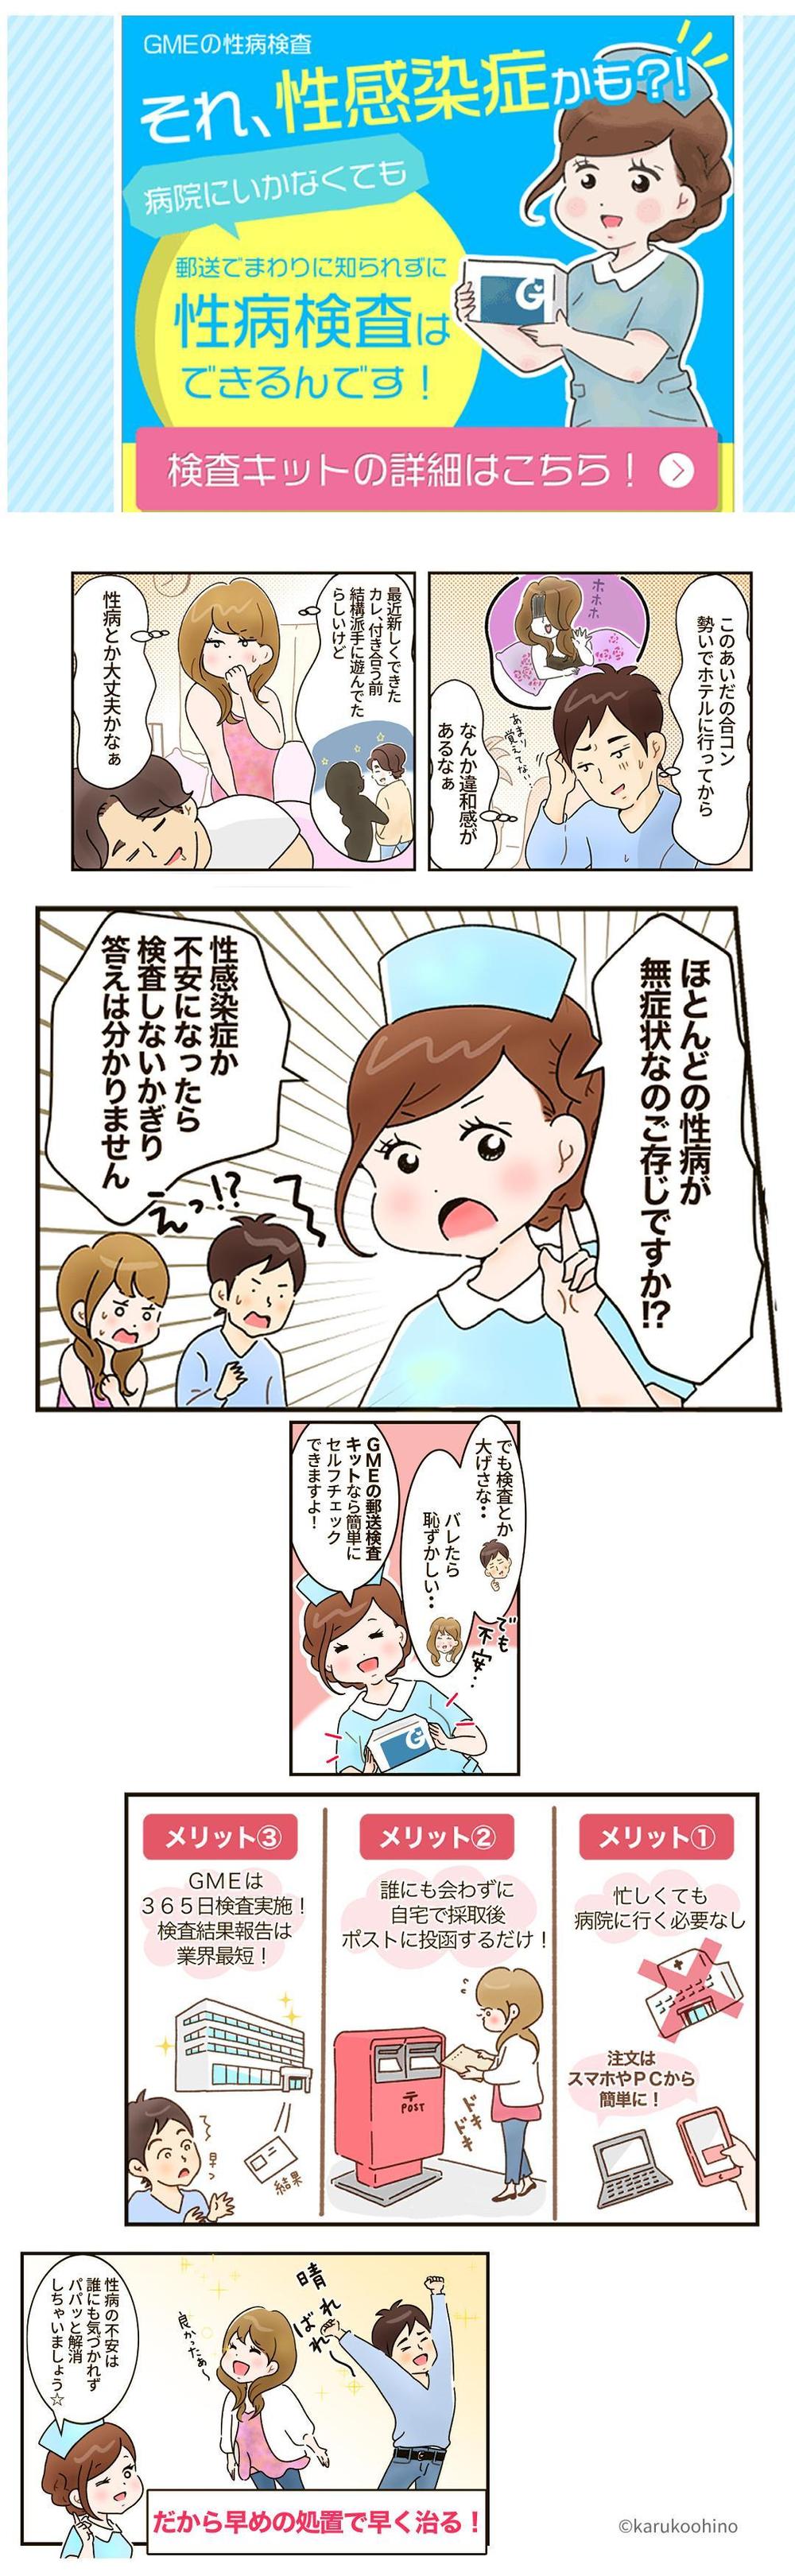 性病検査キットー広告LP漫画